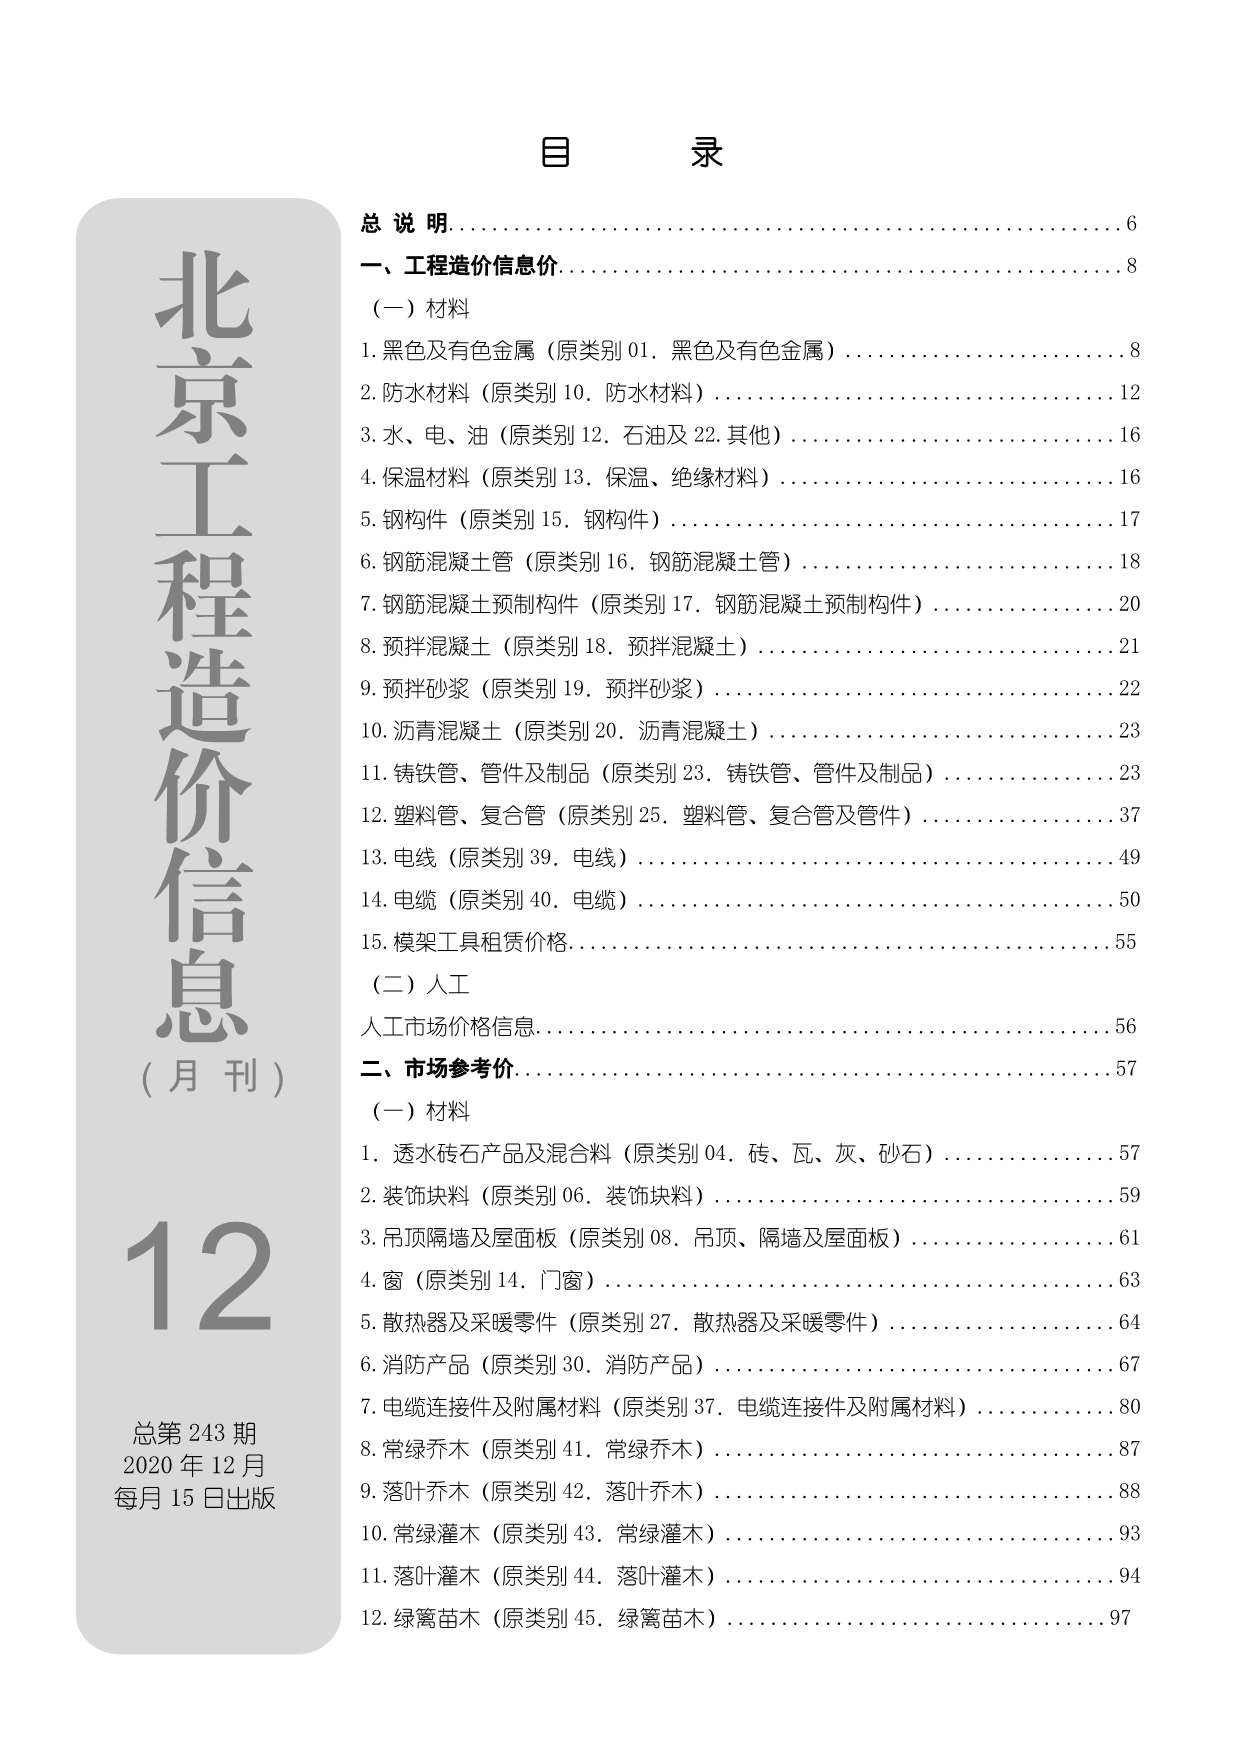 北京市2020年12月工程信息价_北京市信息价期刊PDF扫描件电子版